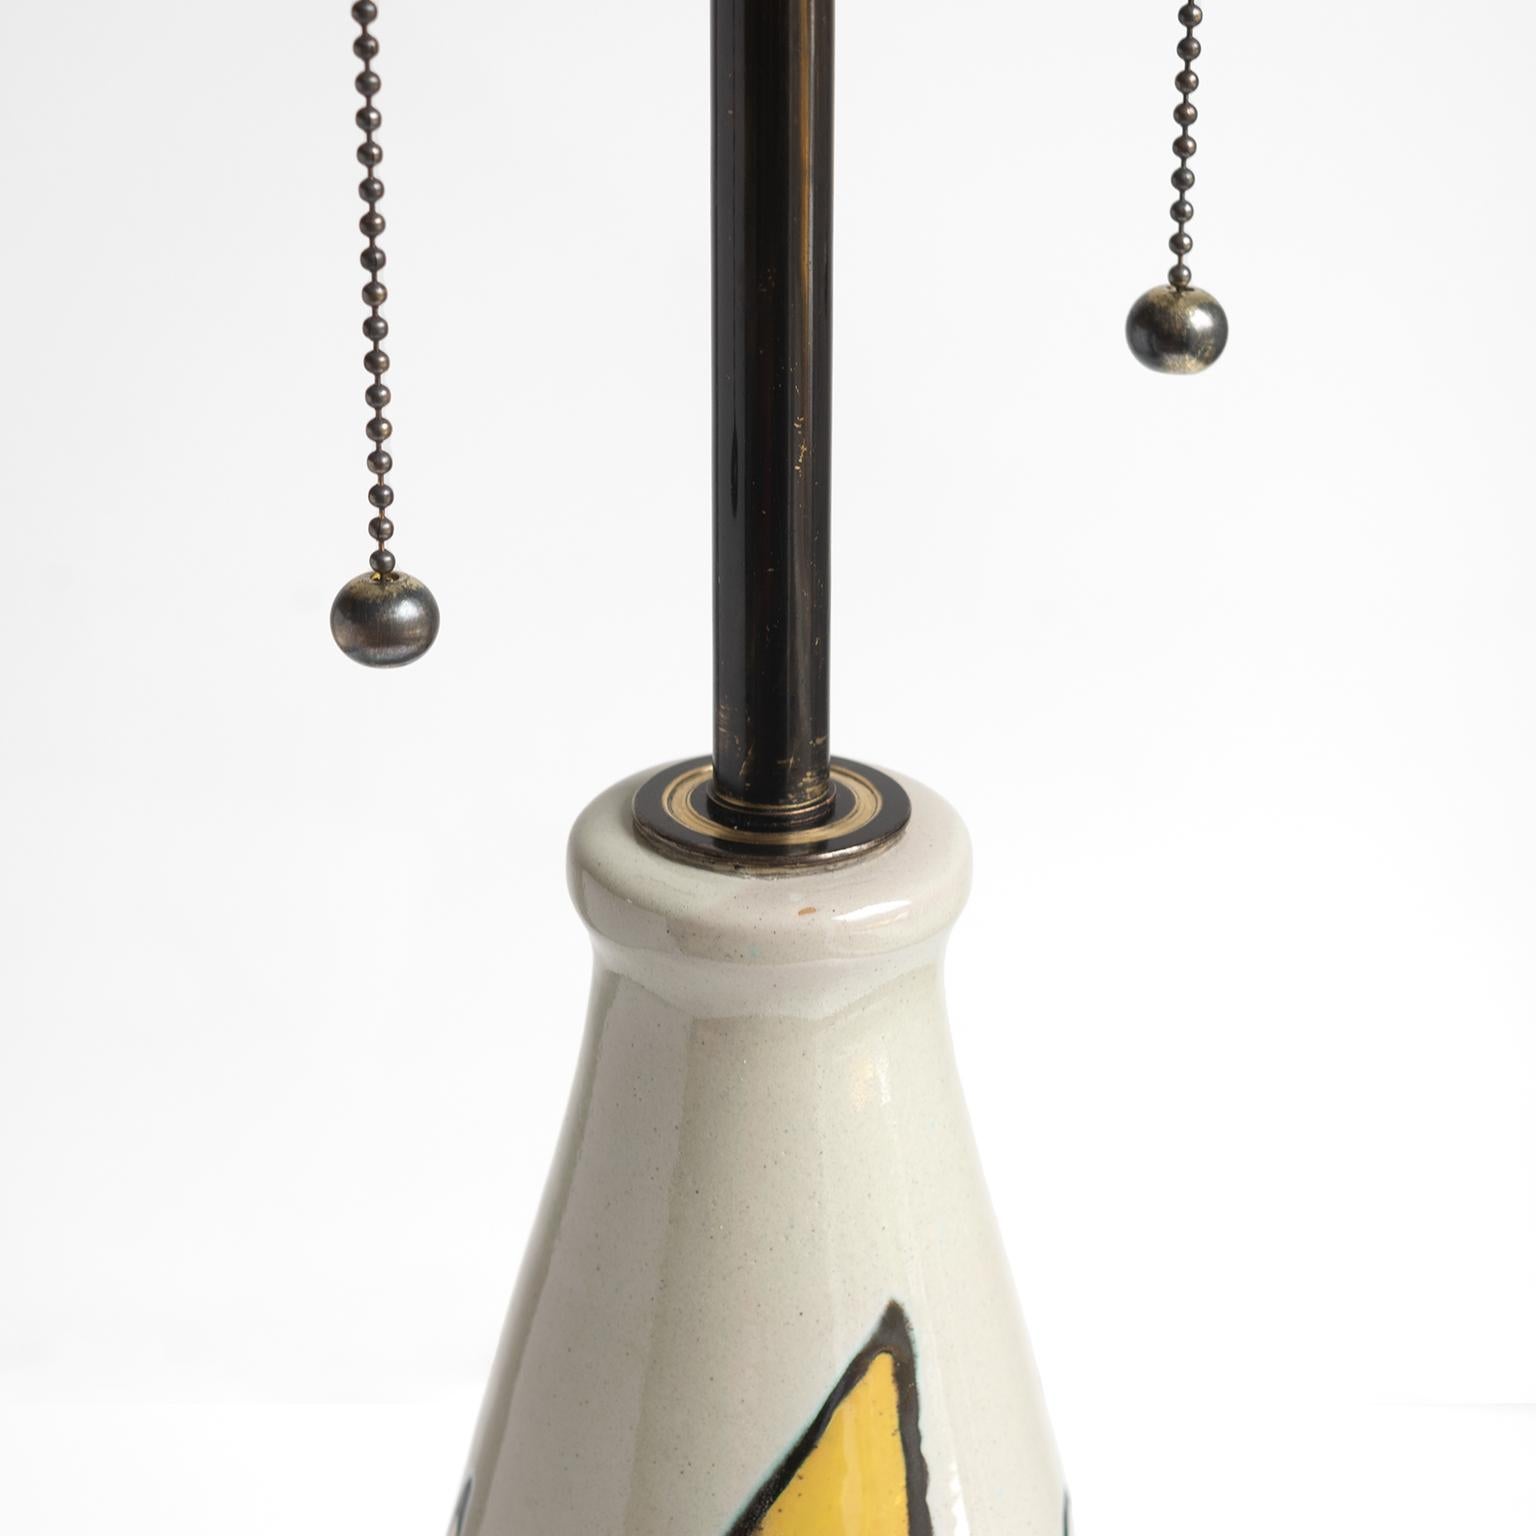 Axel Bruel Scandinavian Modern Ceramic Lamp, Denmark, 1950's For Sale 1